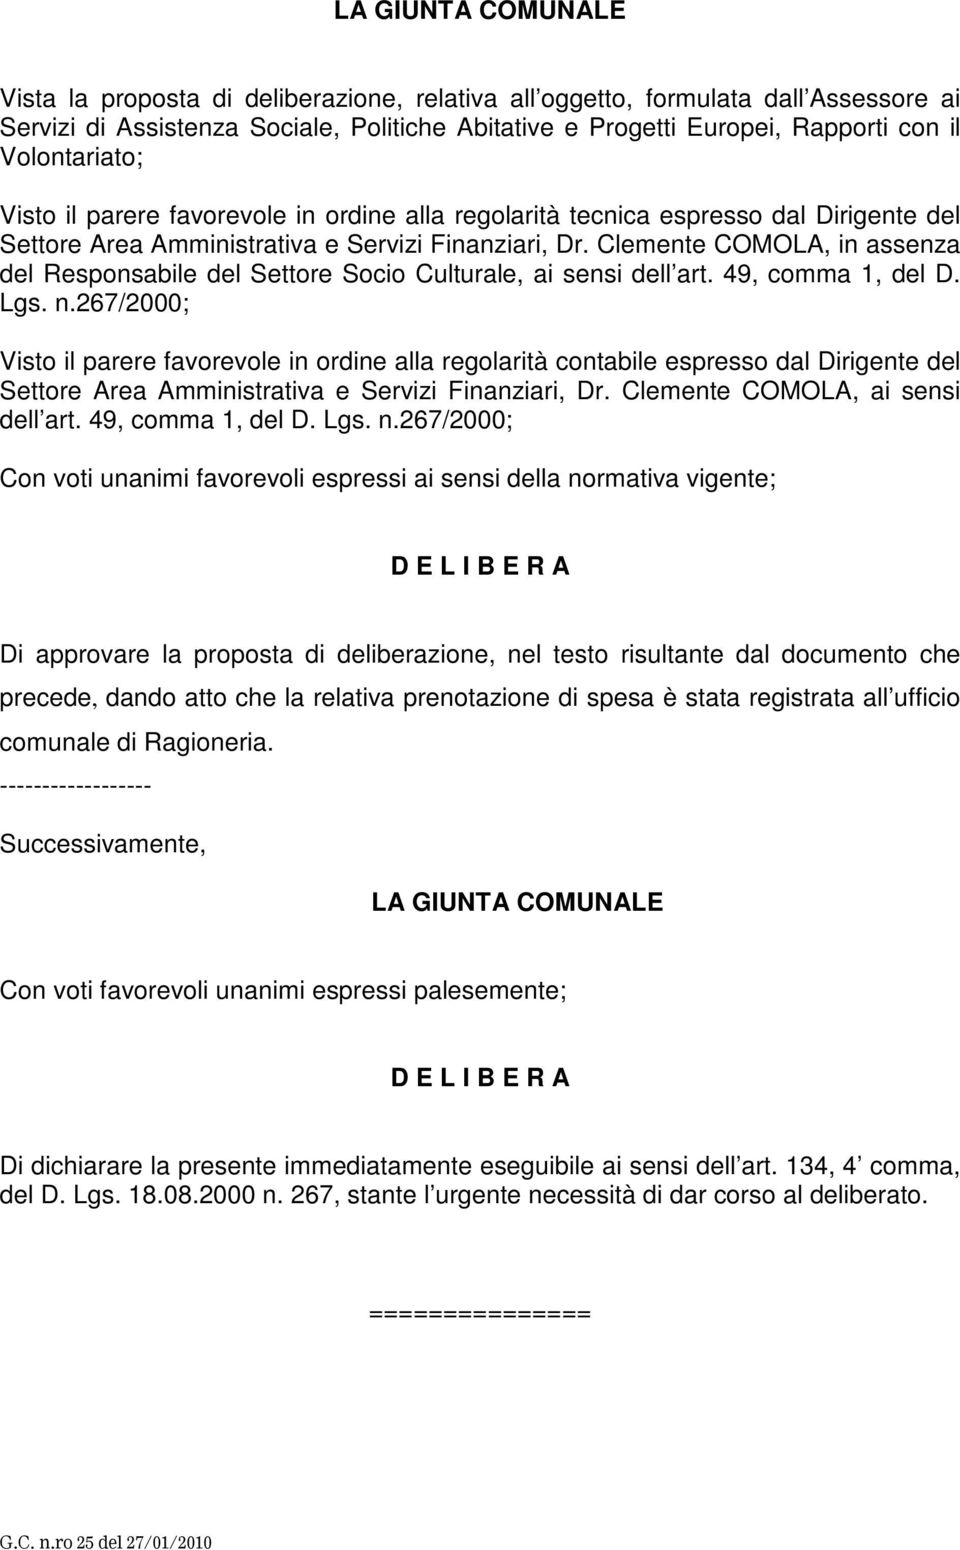 Clemente COMOLA, in assenza del Responsabile del Settore Socio Culturale, ai sensi dell art. 49, comma 1, del D. Lgs. n.